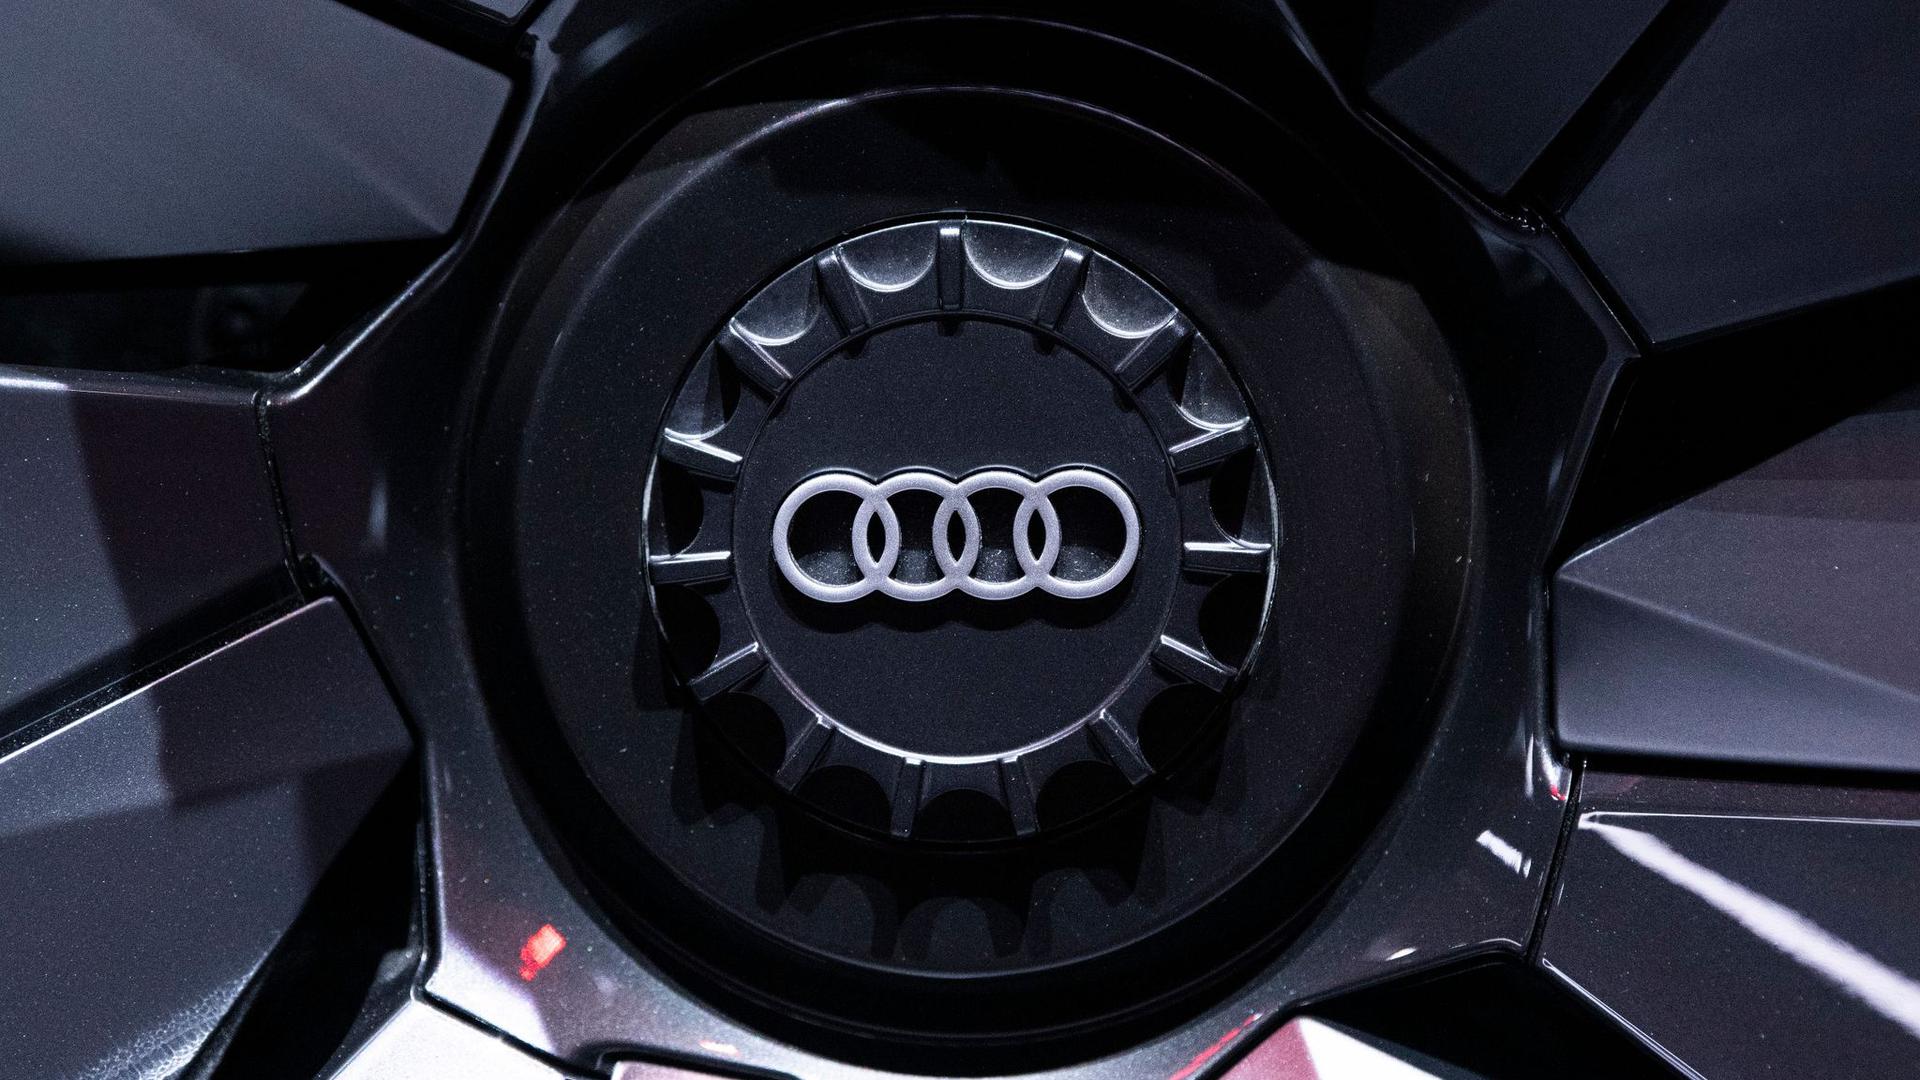 Das Audi-Logo ist auf einer Felge zu sehen.